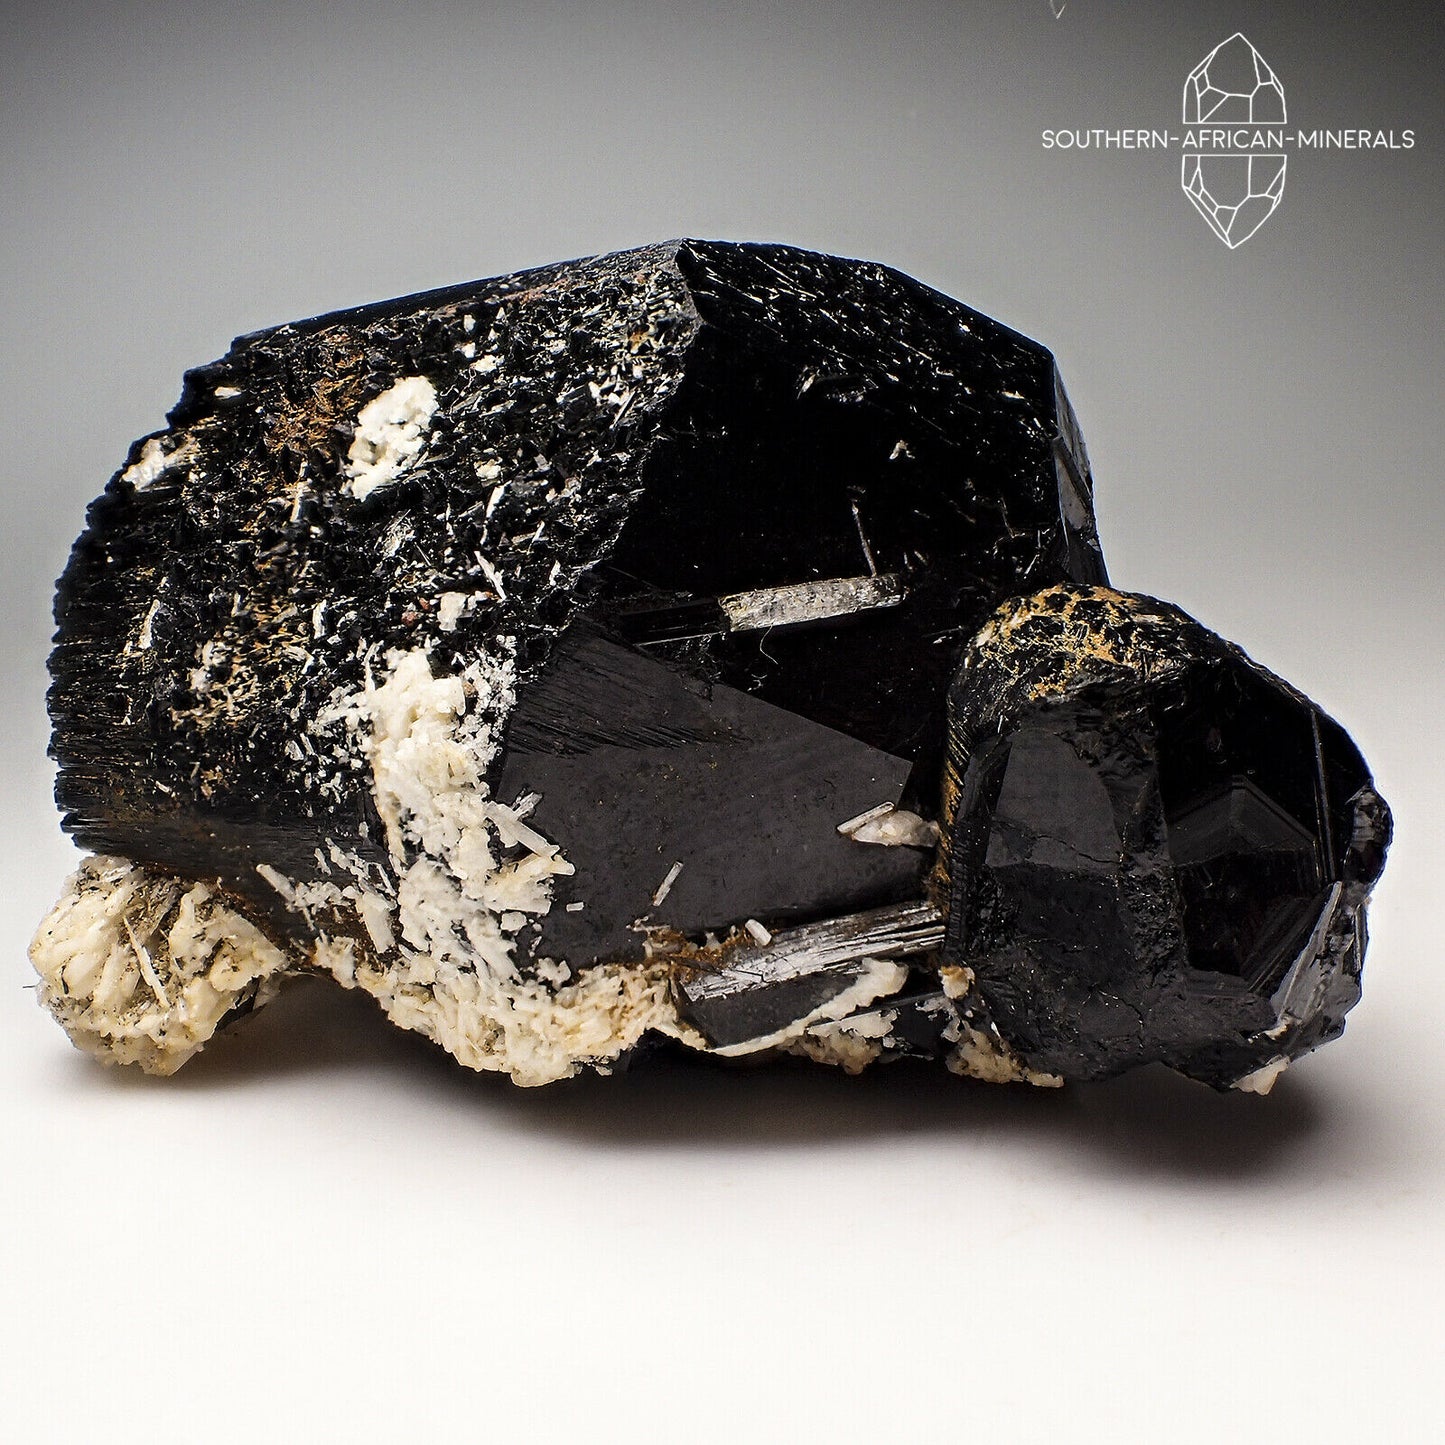 Black Tourmaline with Feldspar Crystal Specimen, Erongo, Namibia